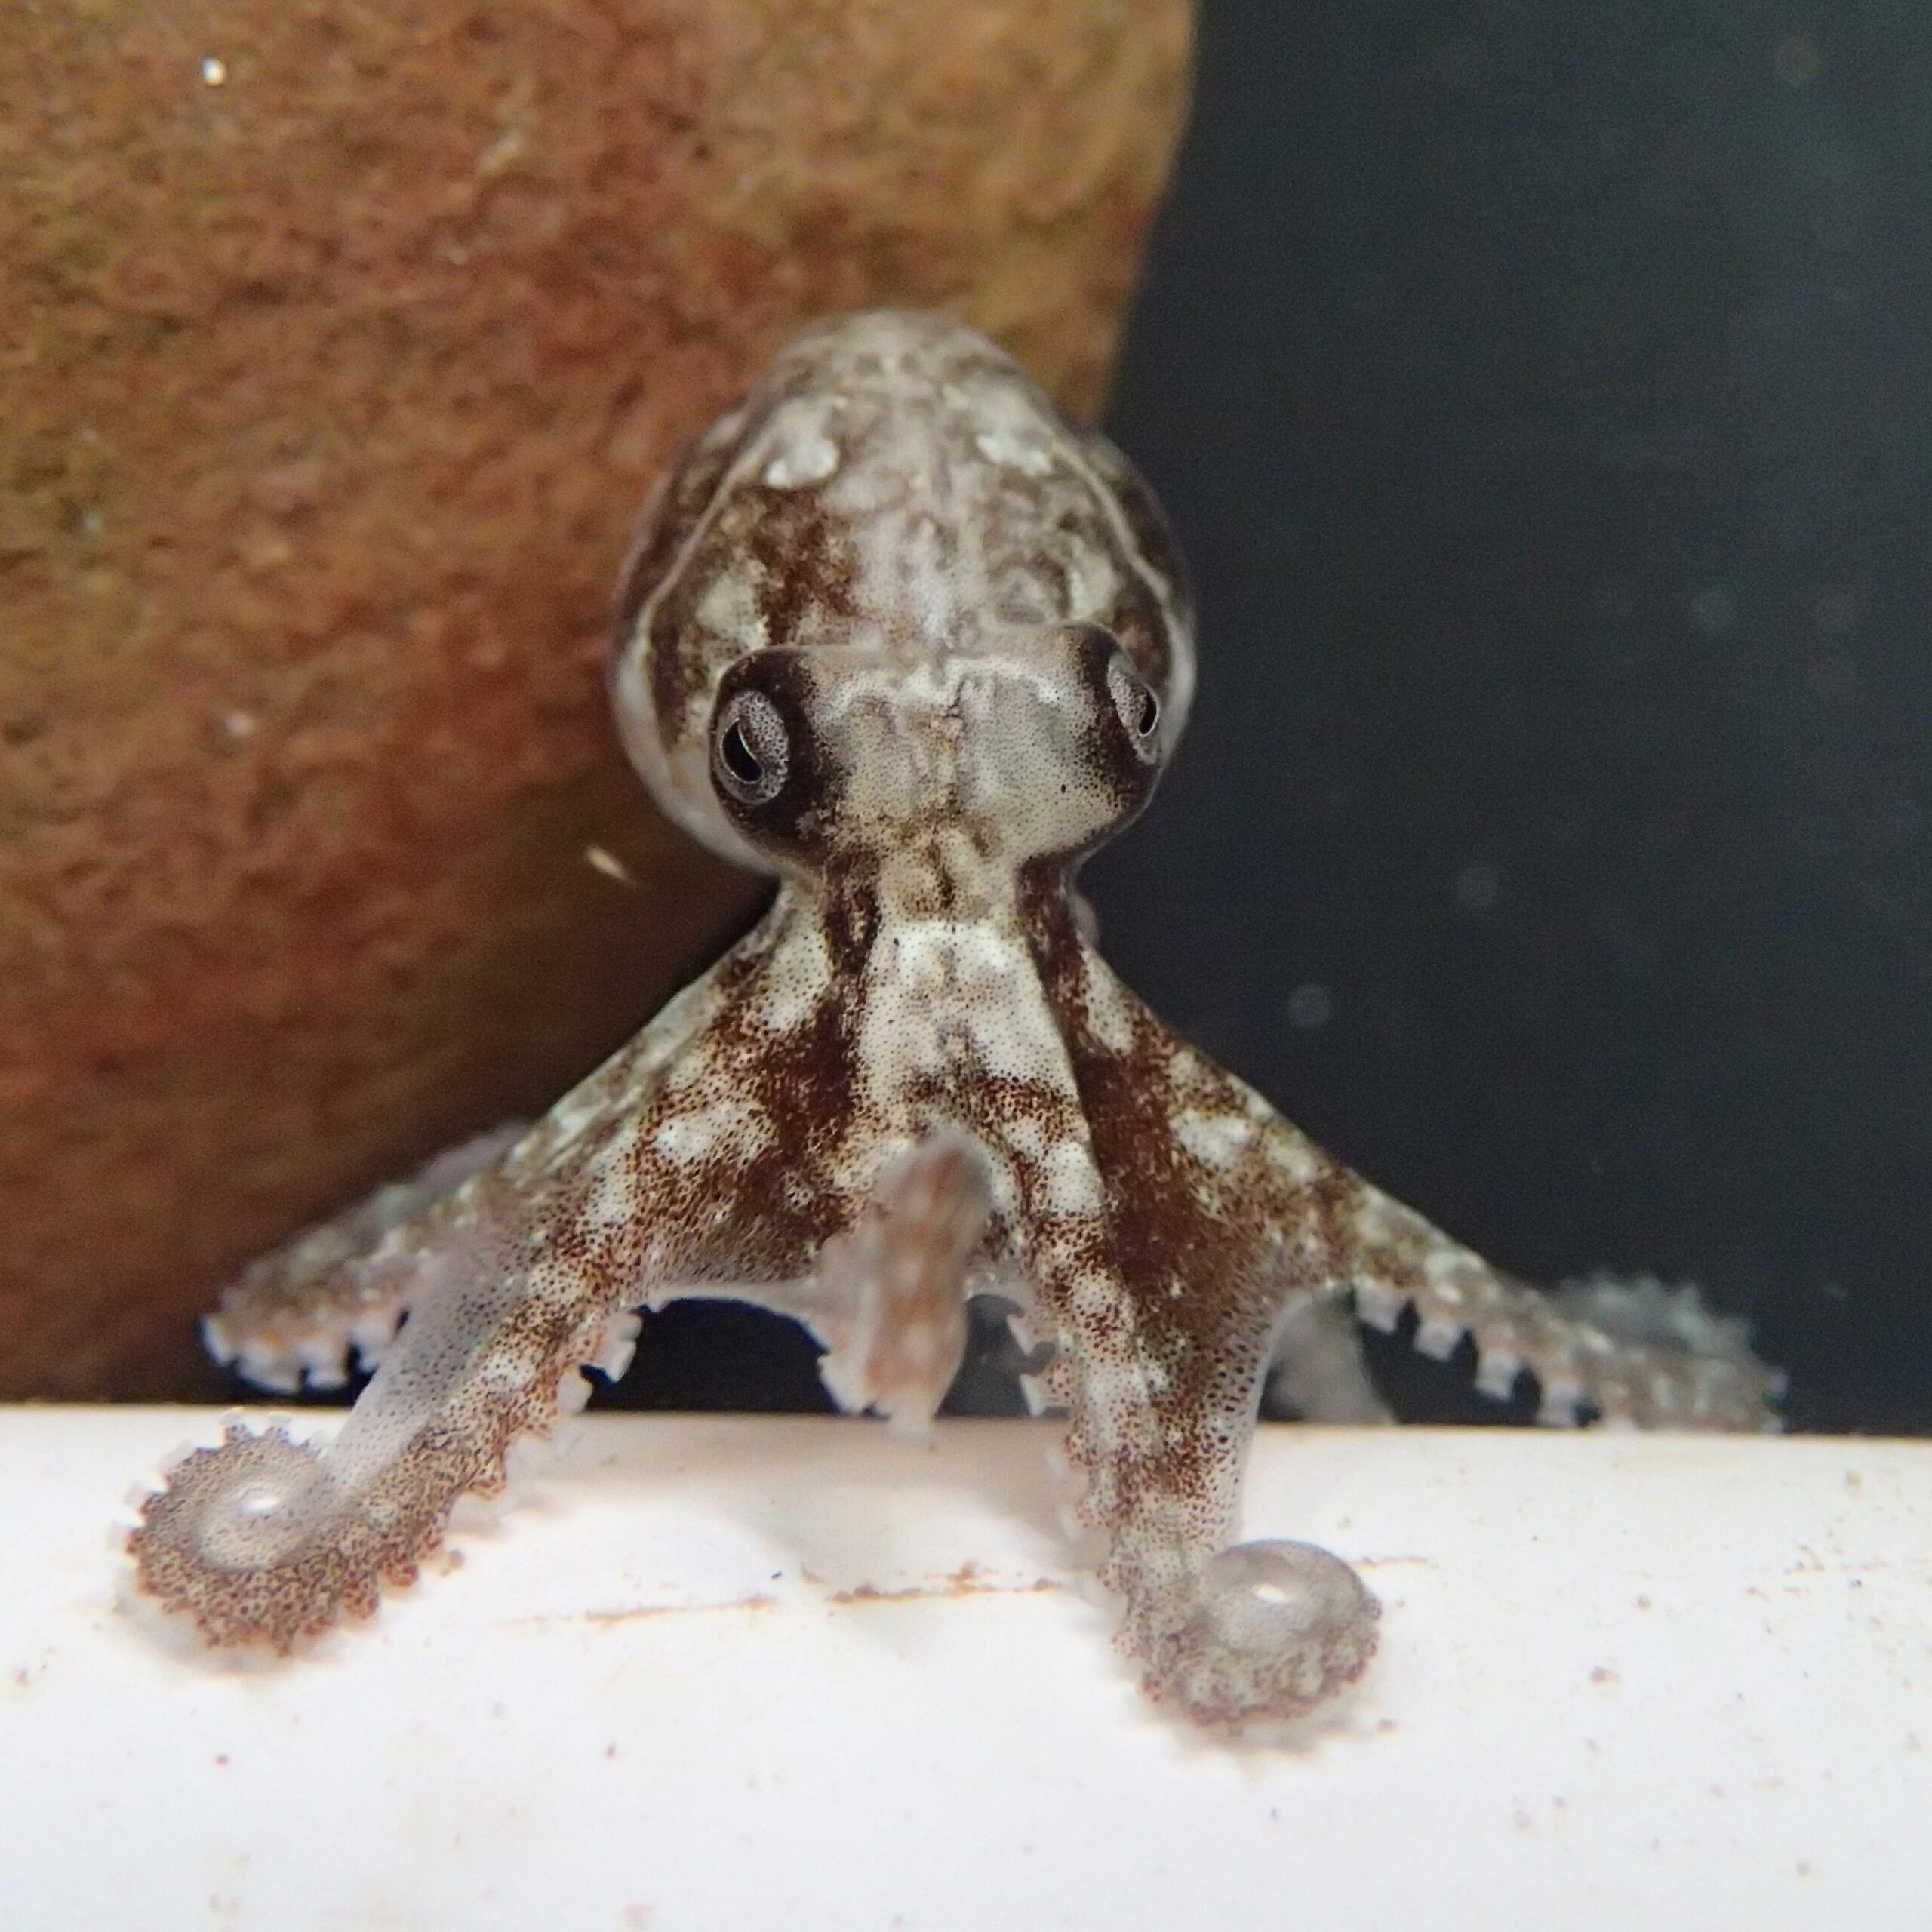 an octopus hatchling